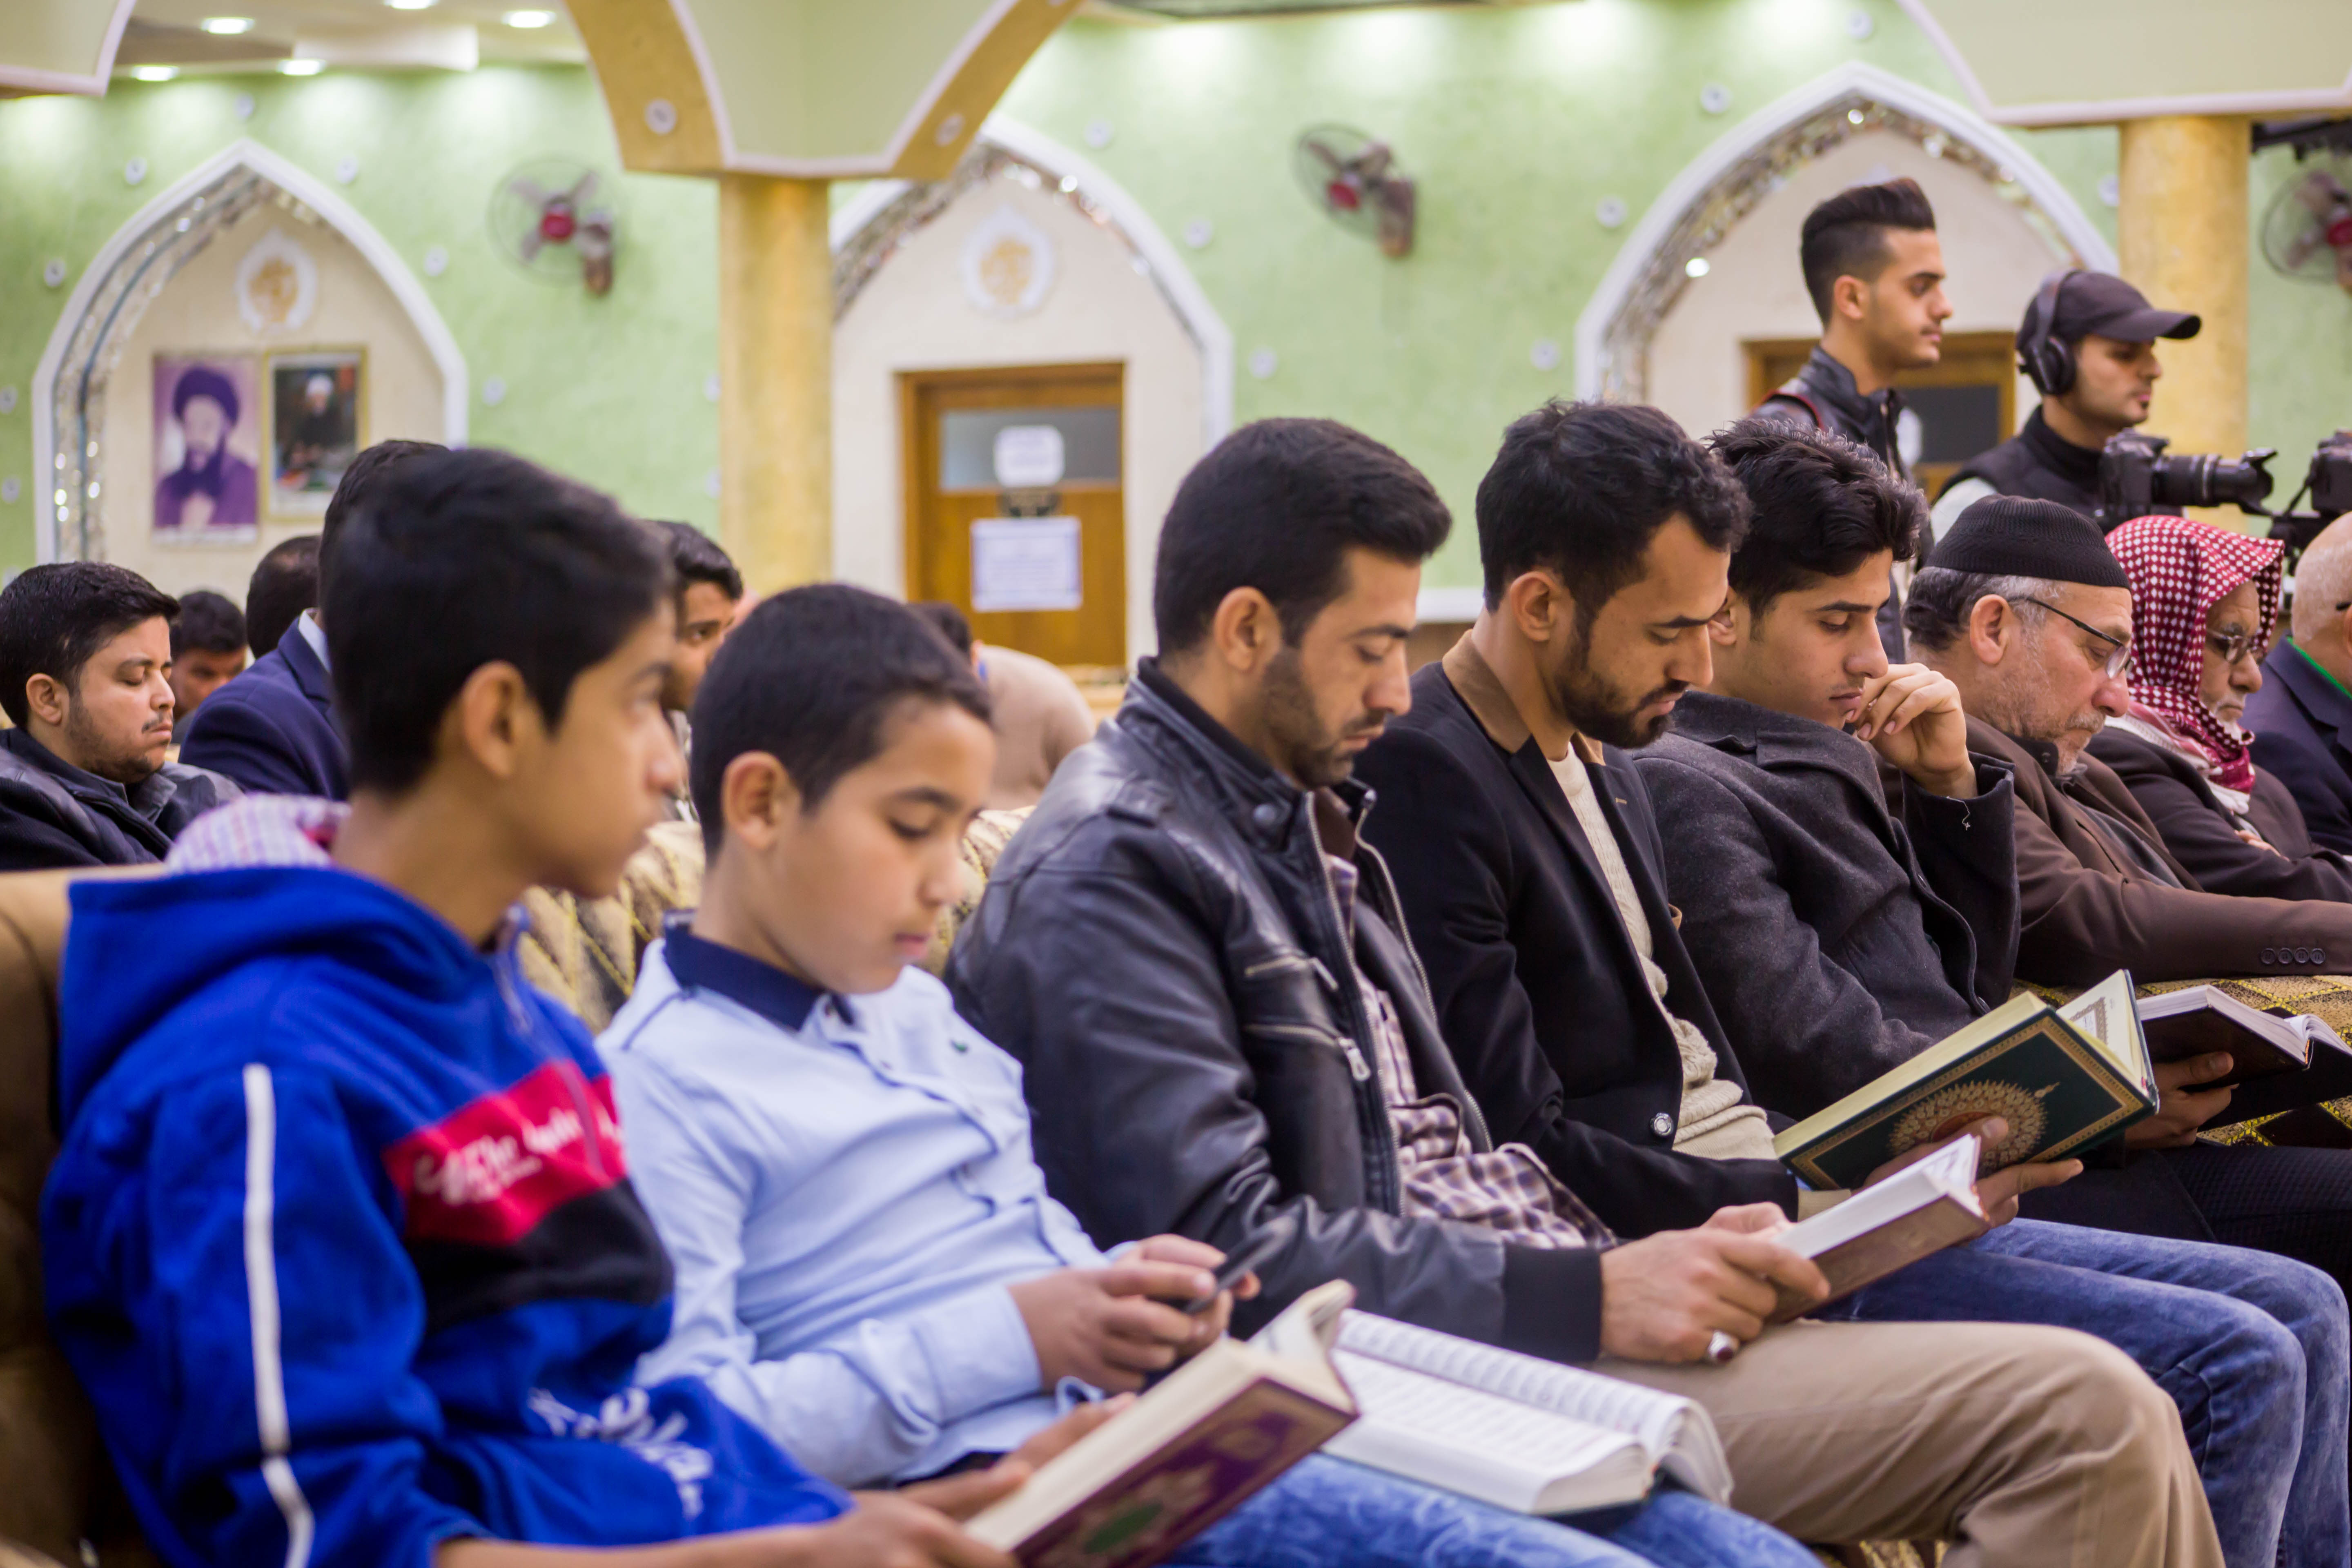 معهد القرآن الكريم/ فرع الهندية يختتم المسابقة القرآنية الثالثة للتلاوة